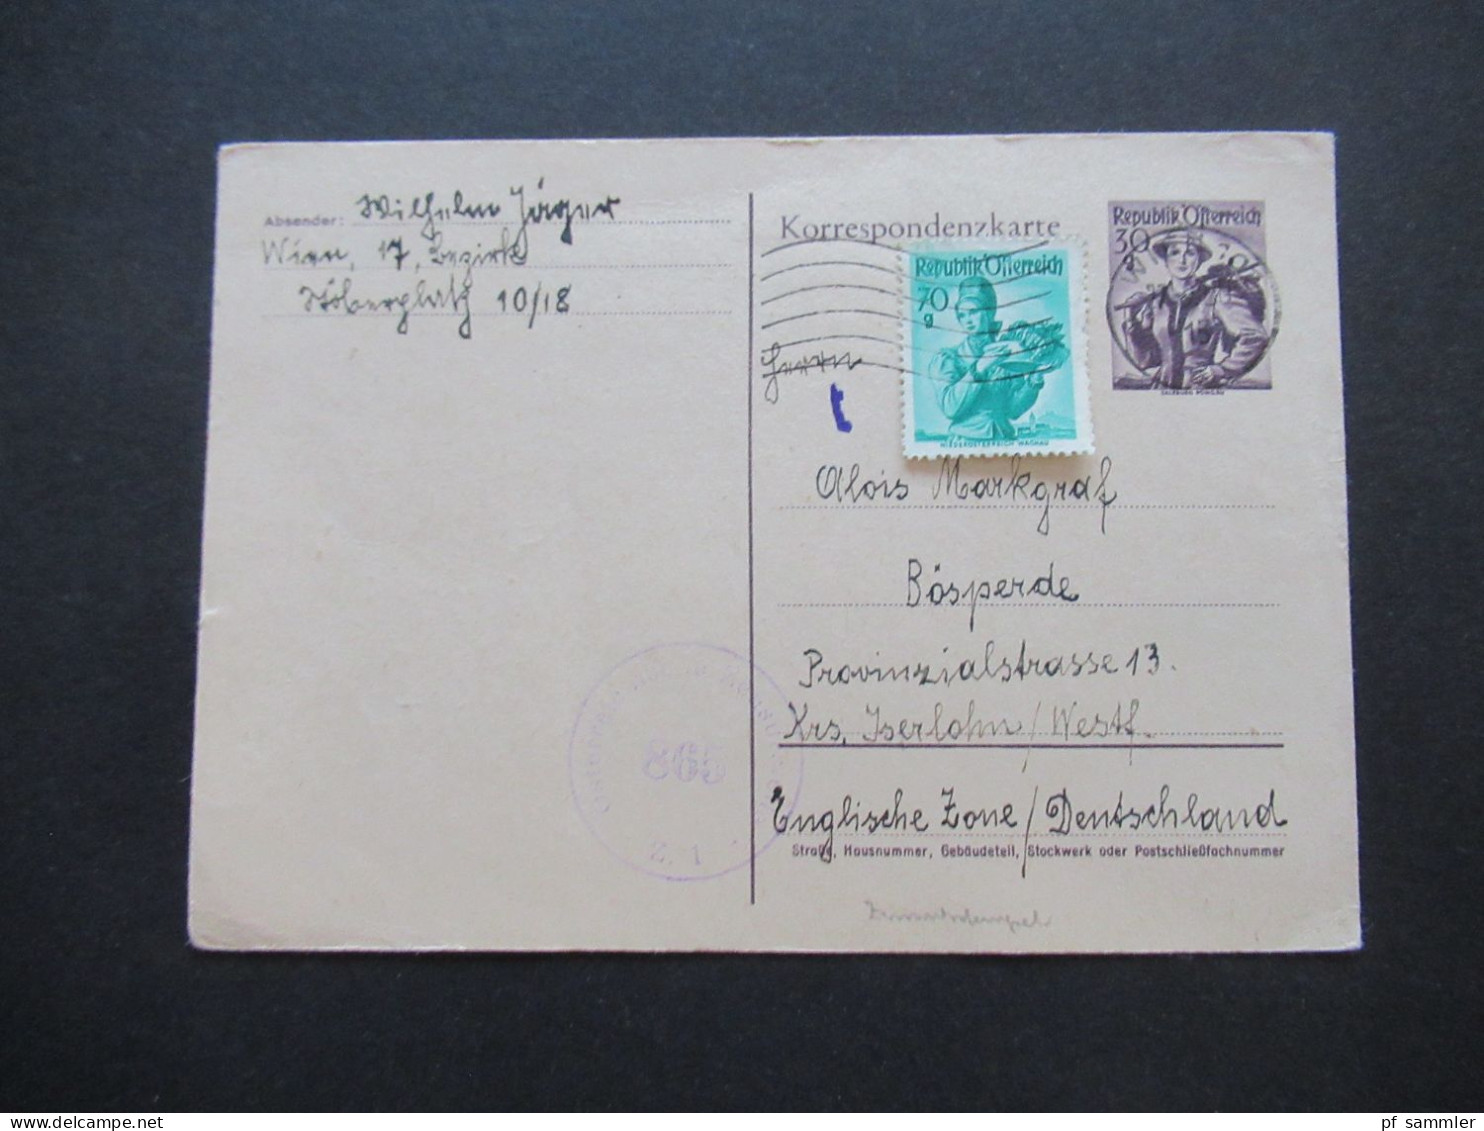 Österreich 1950 Auslands Postkarte Ganzsache P 332 Mit Zusatzfrankatur Und Zensurstempel Oesterreichische Zensurstelle Z - Postcards